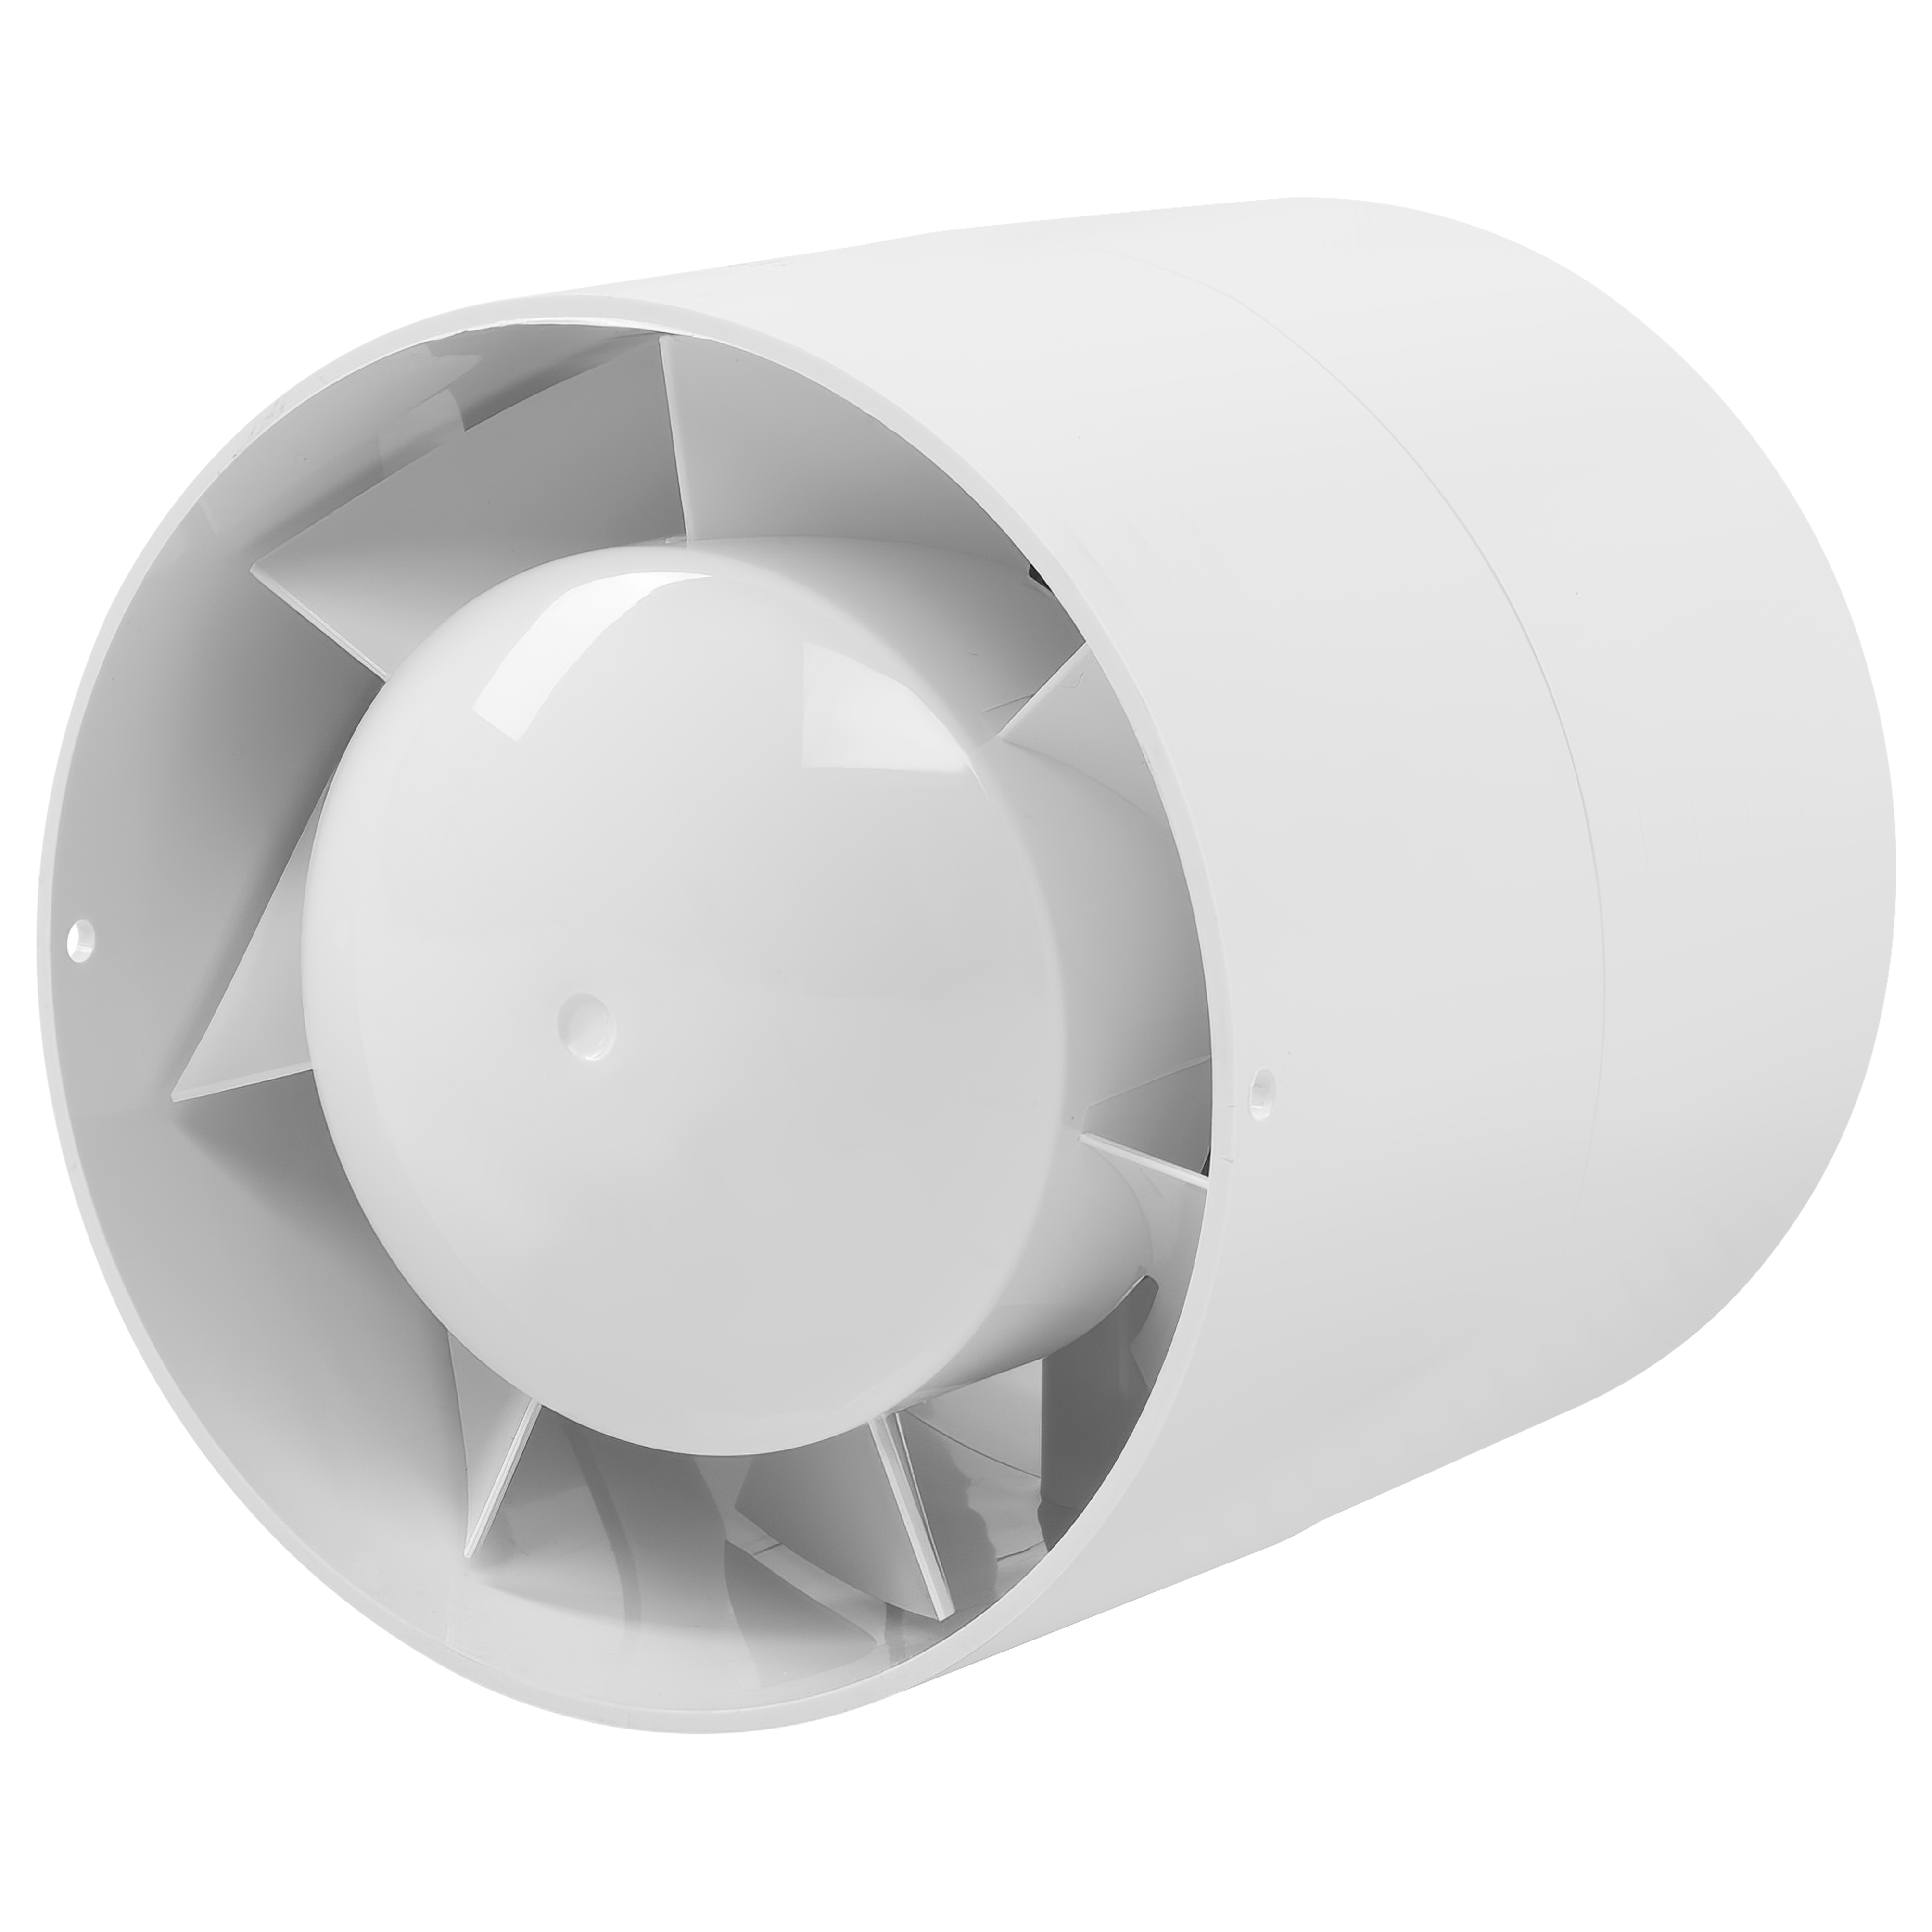 Канальный вентилятор Blauberg Tubo 100 T в интернет-магазине, главное фото